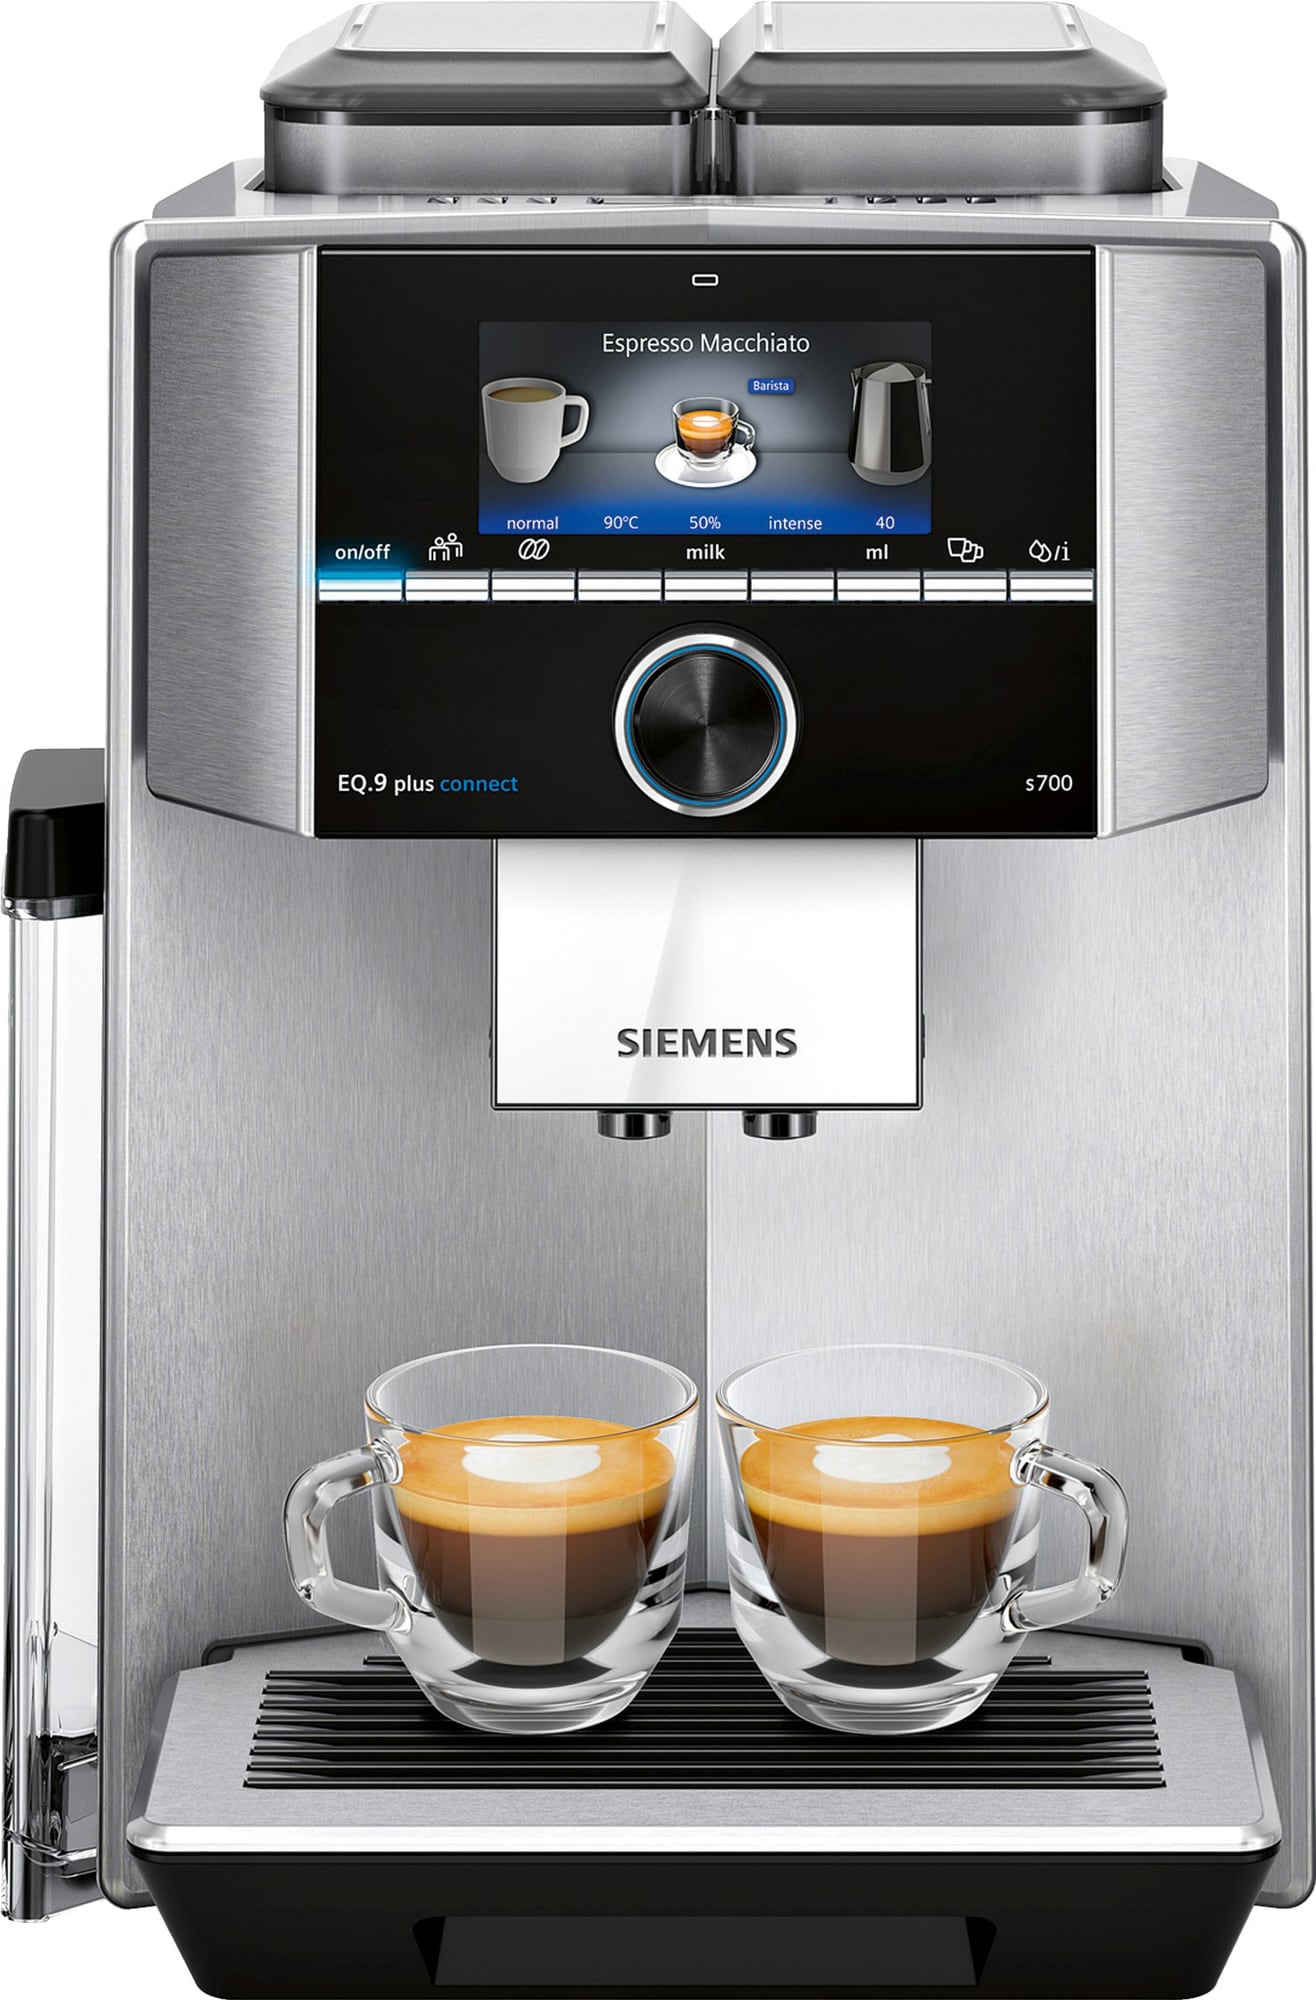 Siemens EQ.9 Plus kahvikone TI9573X1RW - Gigantti verkkokauppa